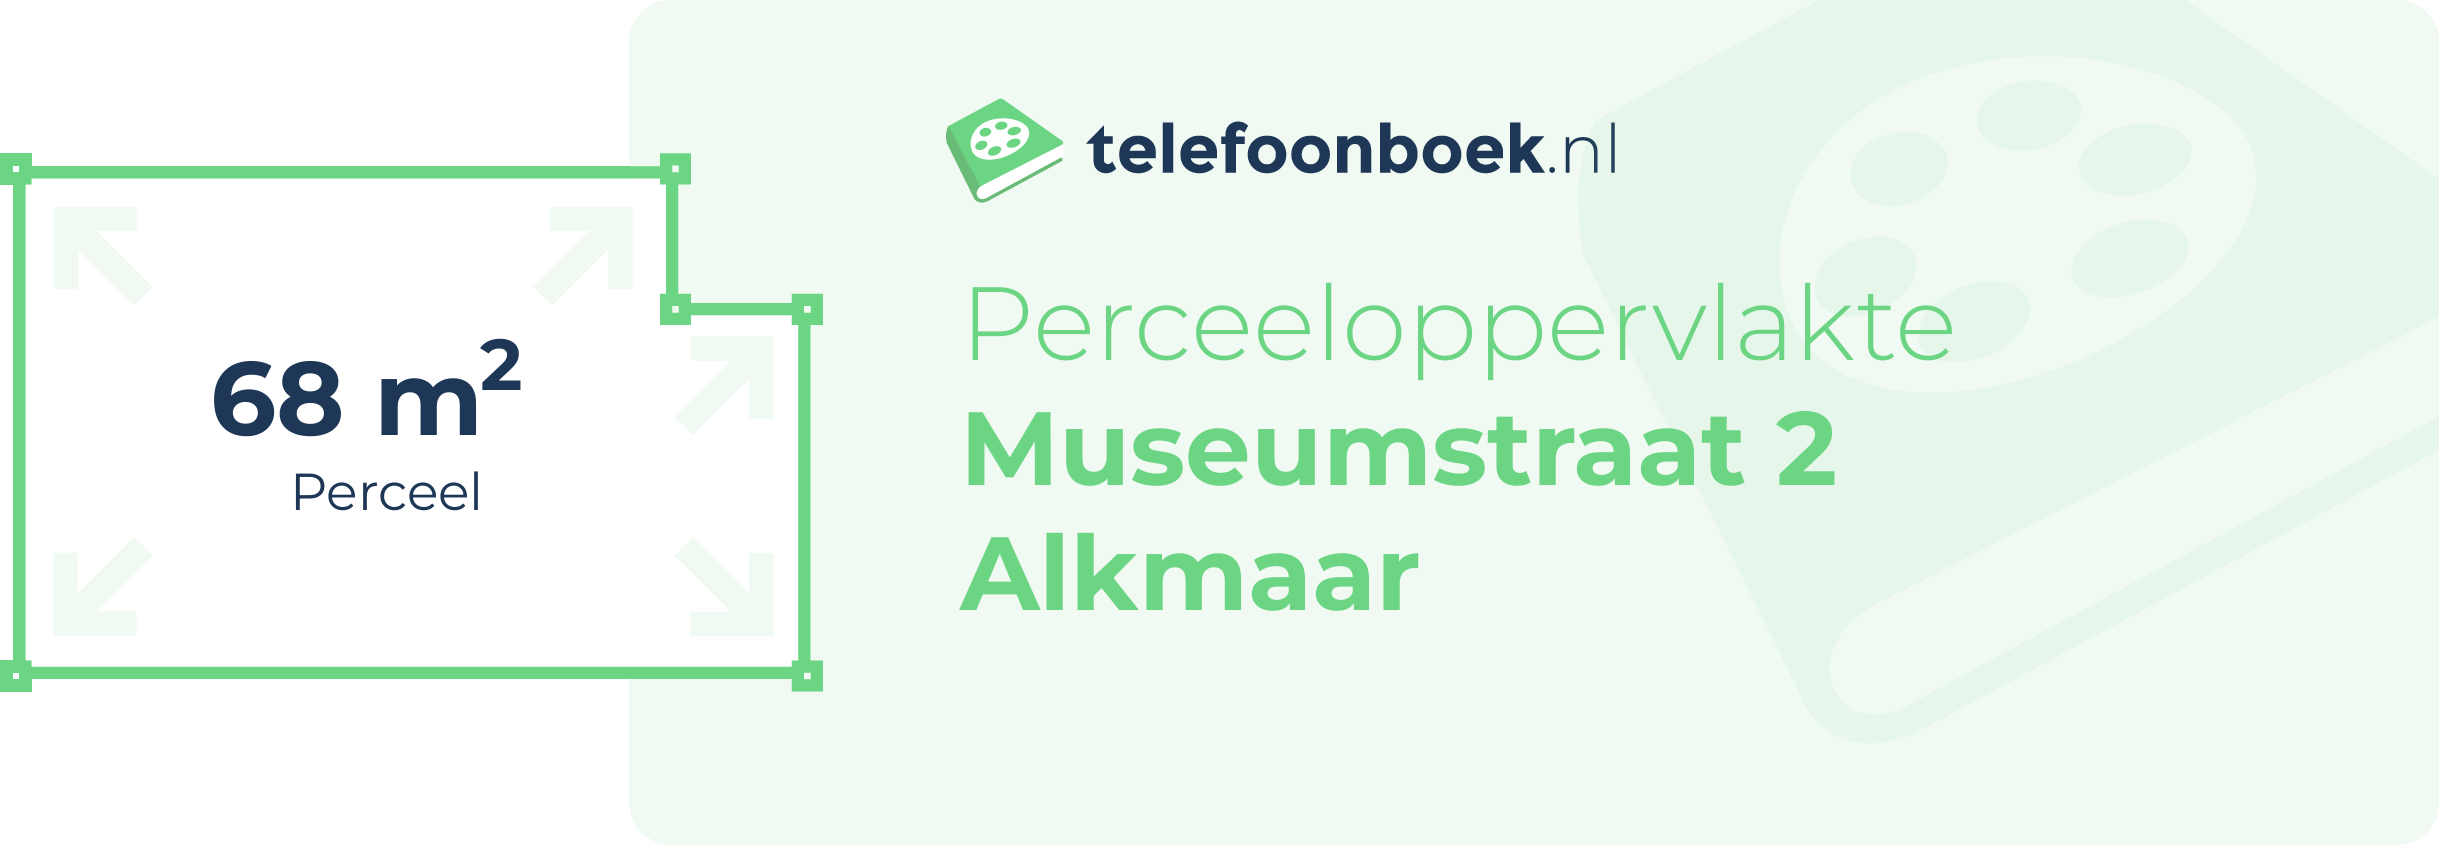 Perceeloppervlakte Museumstraat 2 Alkmaar